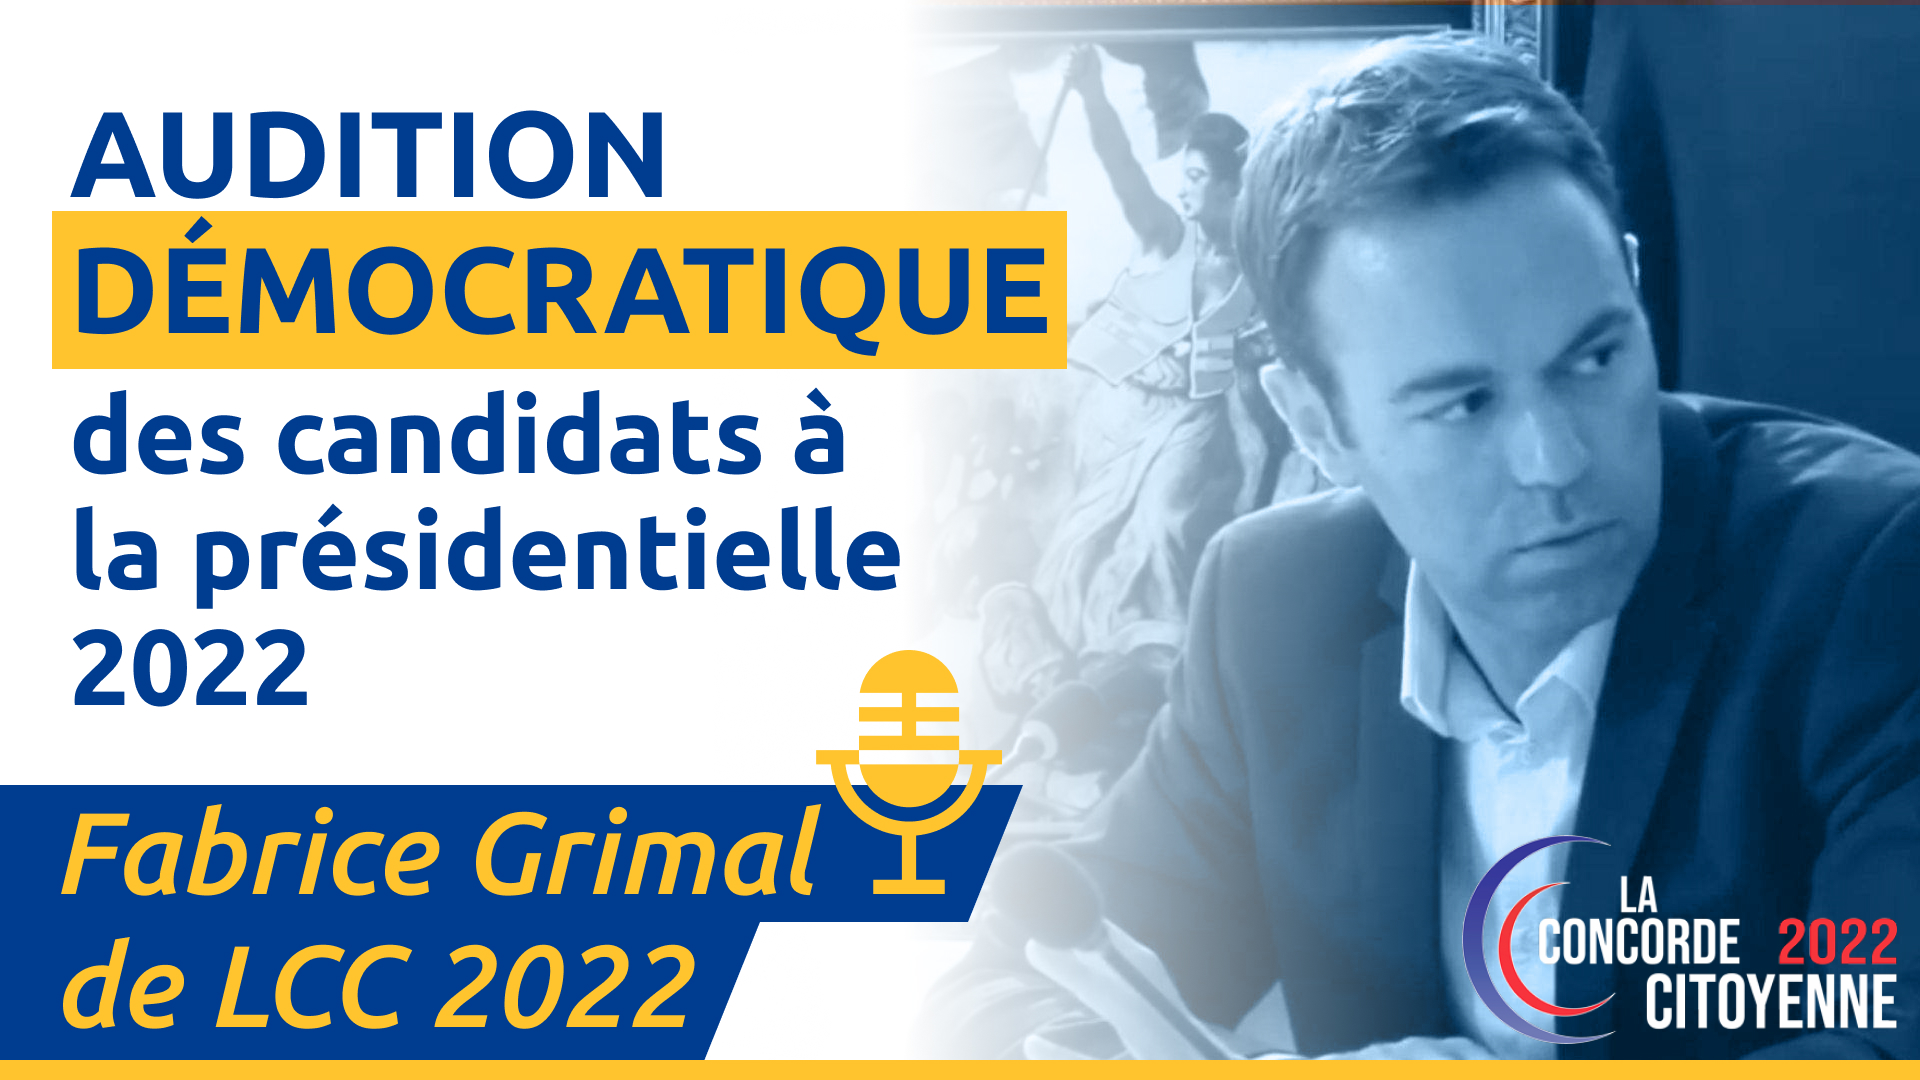 Live Audition démocratique de Fabrice Grimal de La Concorde Citoyenne 2022